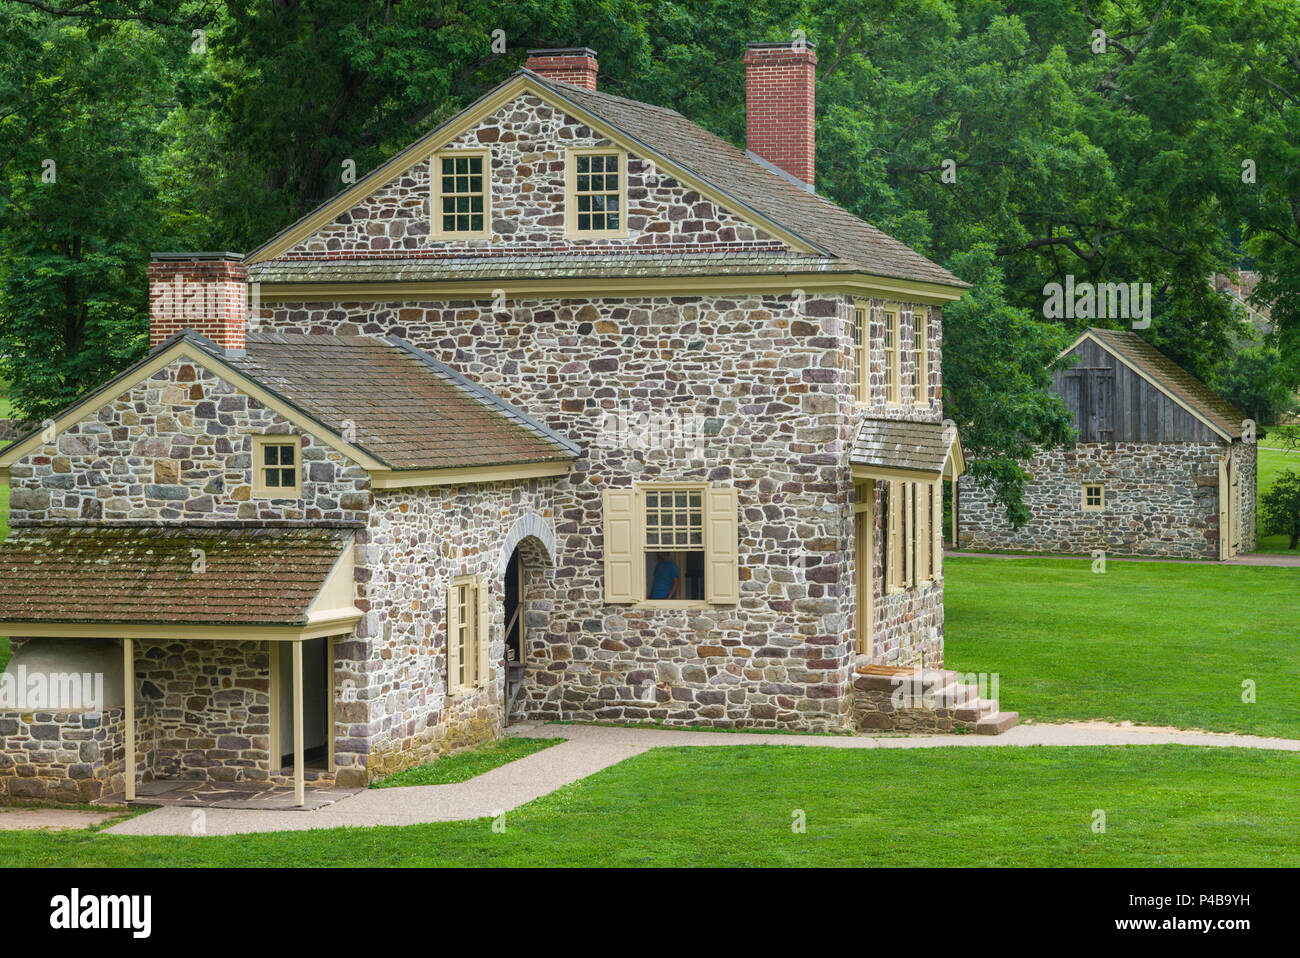 USA, Pennsylvania, König von Preußen, Valley Forge National Historical Park, Schlachtfeld der amerikanischen revolutionären Krieg, General George Washington's Hauptsitz Stockfoto